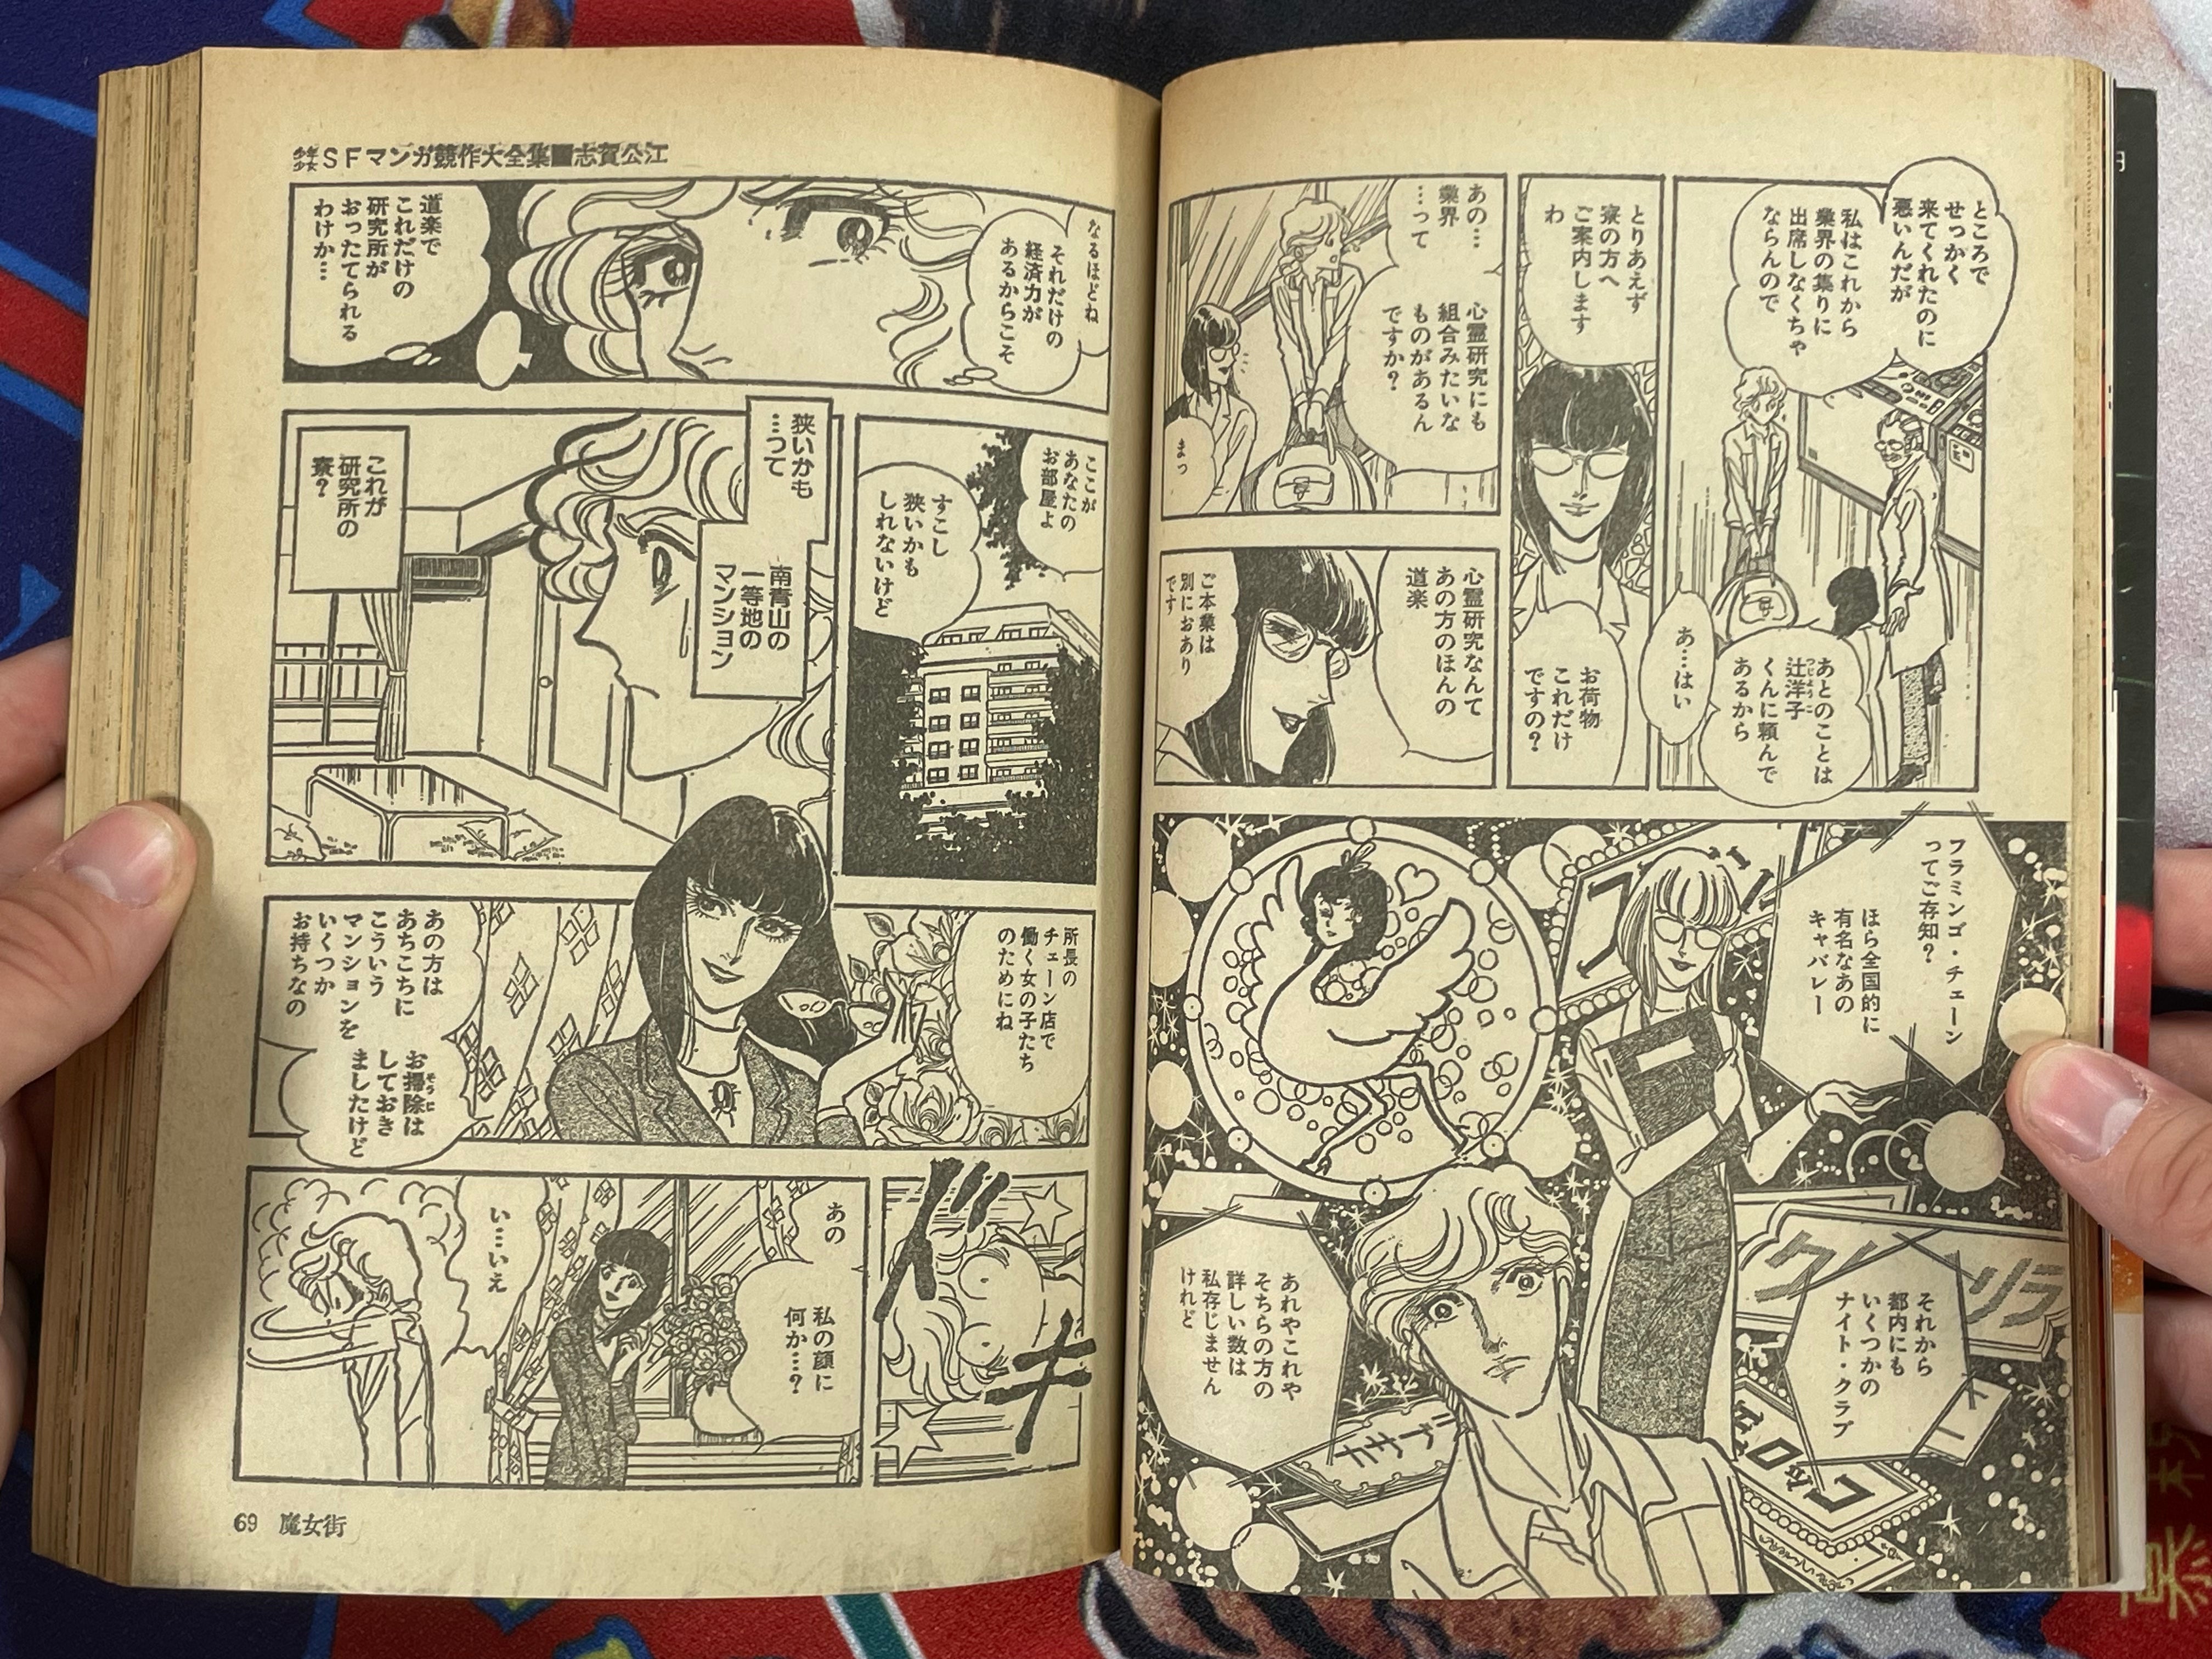 SF Manga Kyosaku Big Collection Magazine Part 12 - 10/1981